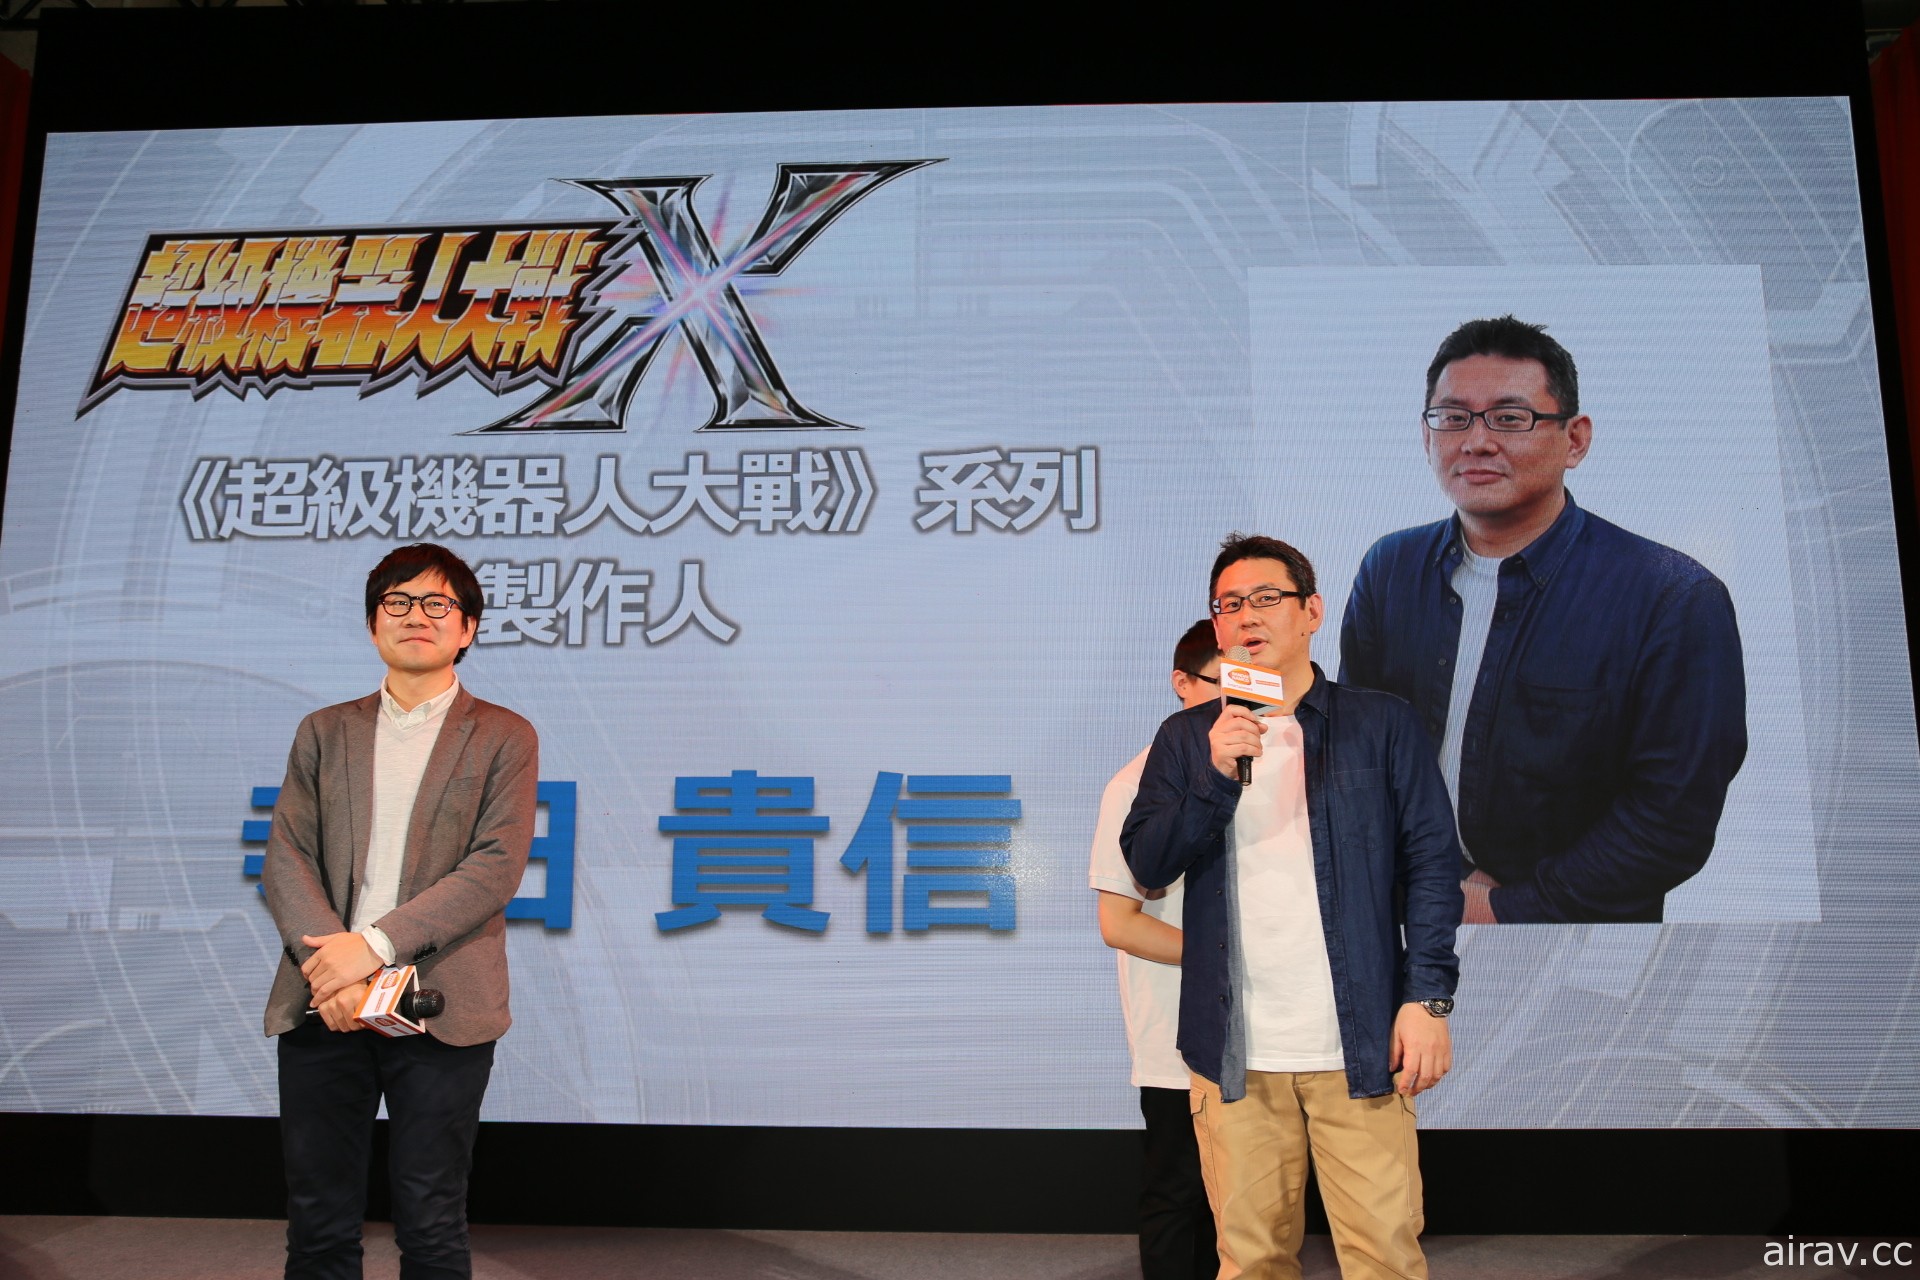 《超級機器人大戰》系列製作人寺田貴信宣布離職 但仍將以顧問身分參與製作